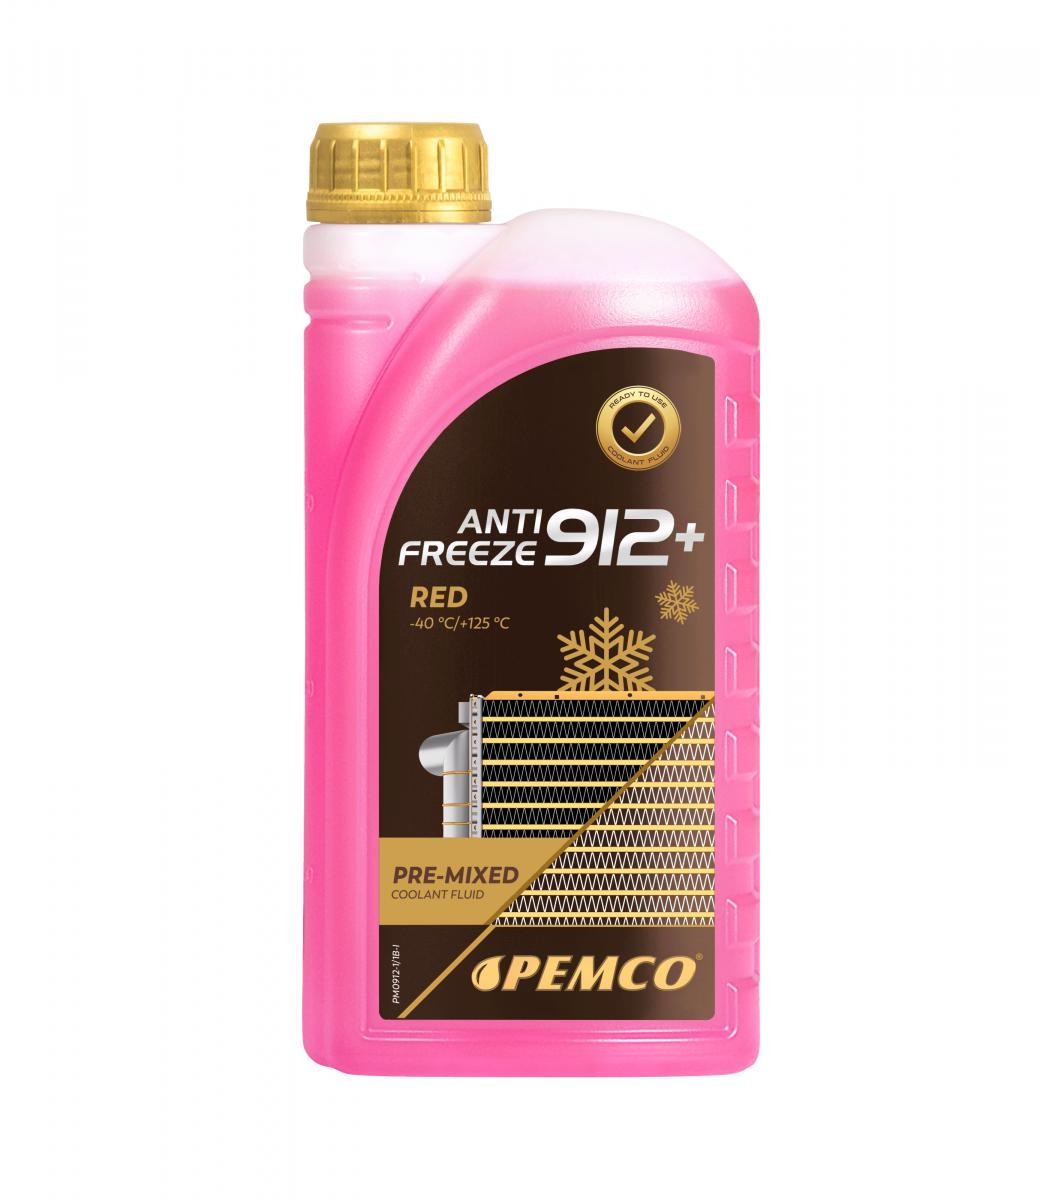 PEMCO Antifreeze 912+, -40 PM0912-1 Kylarvätska G12 Röd, 1l